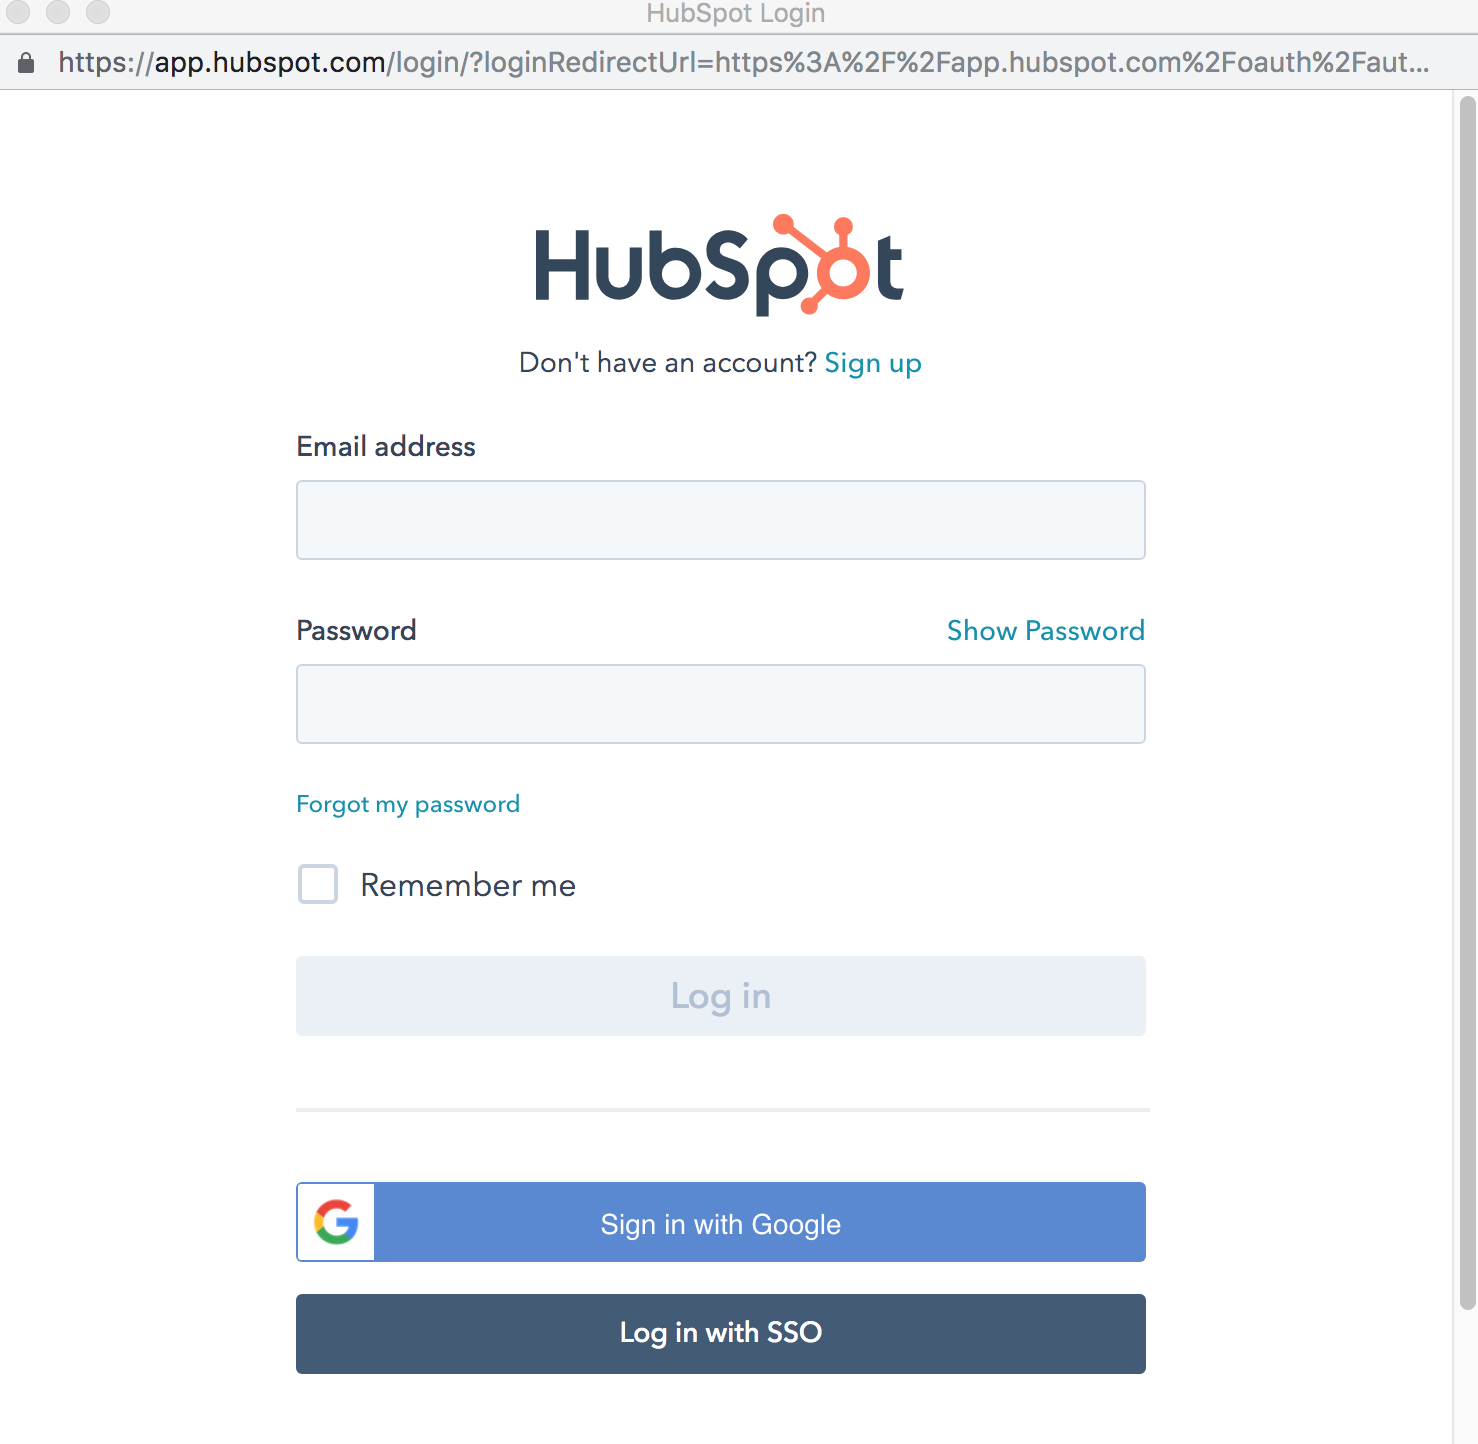 hubspot-login-page-integration.jpg